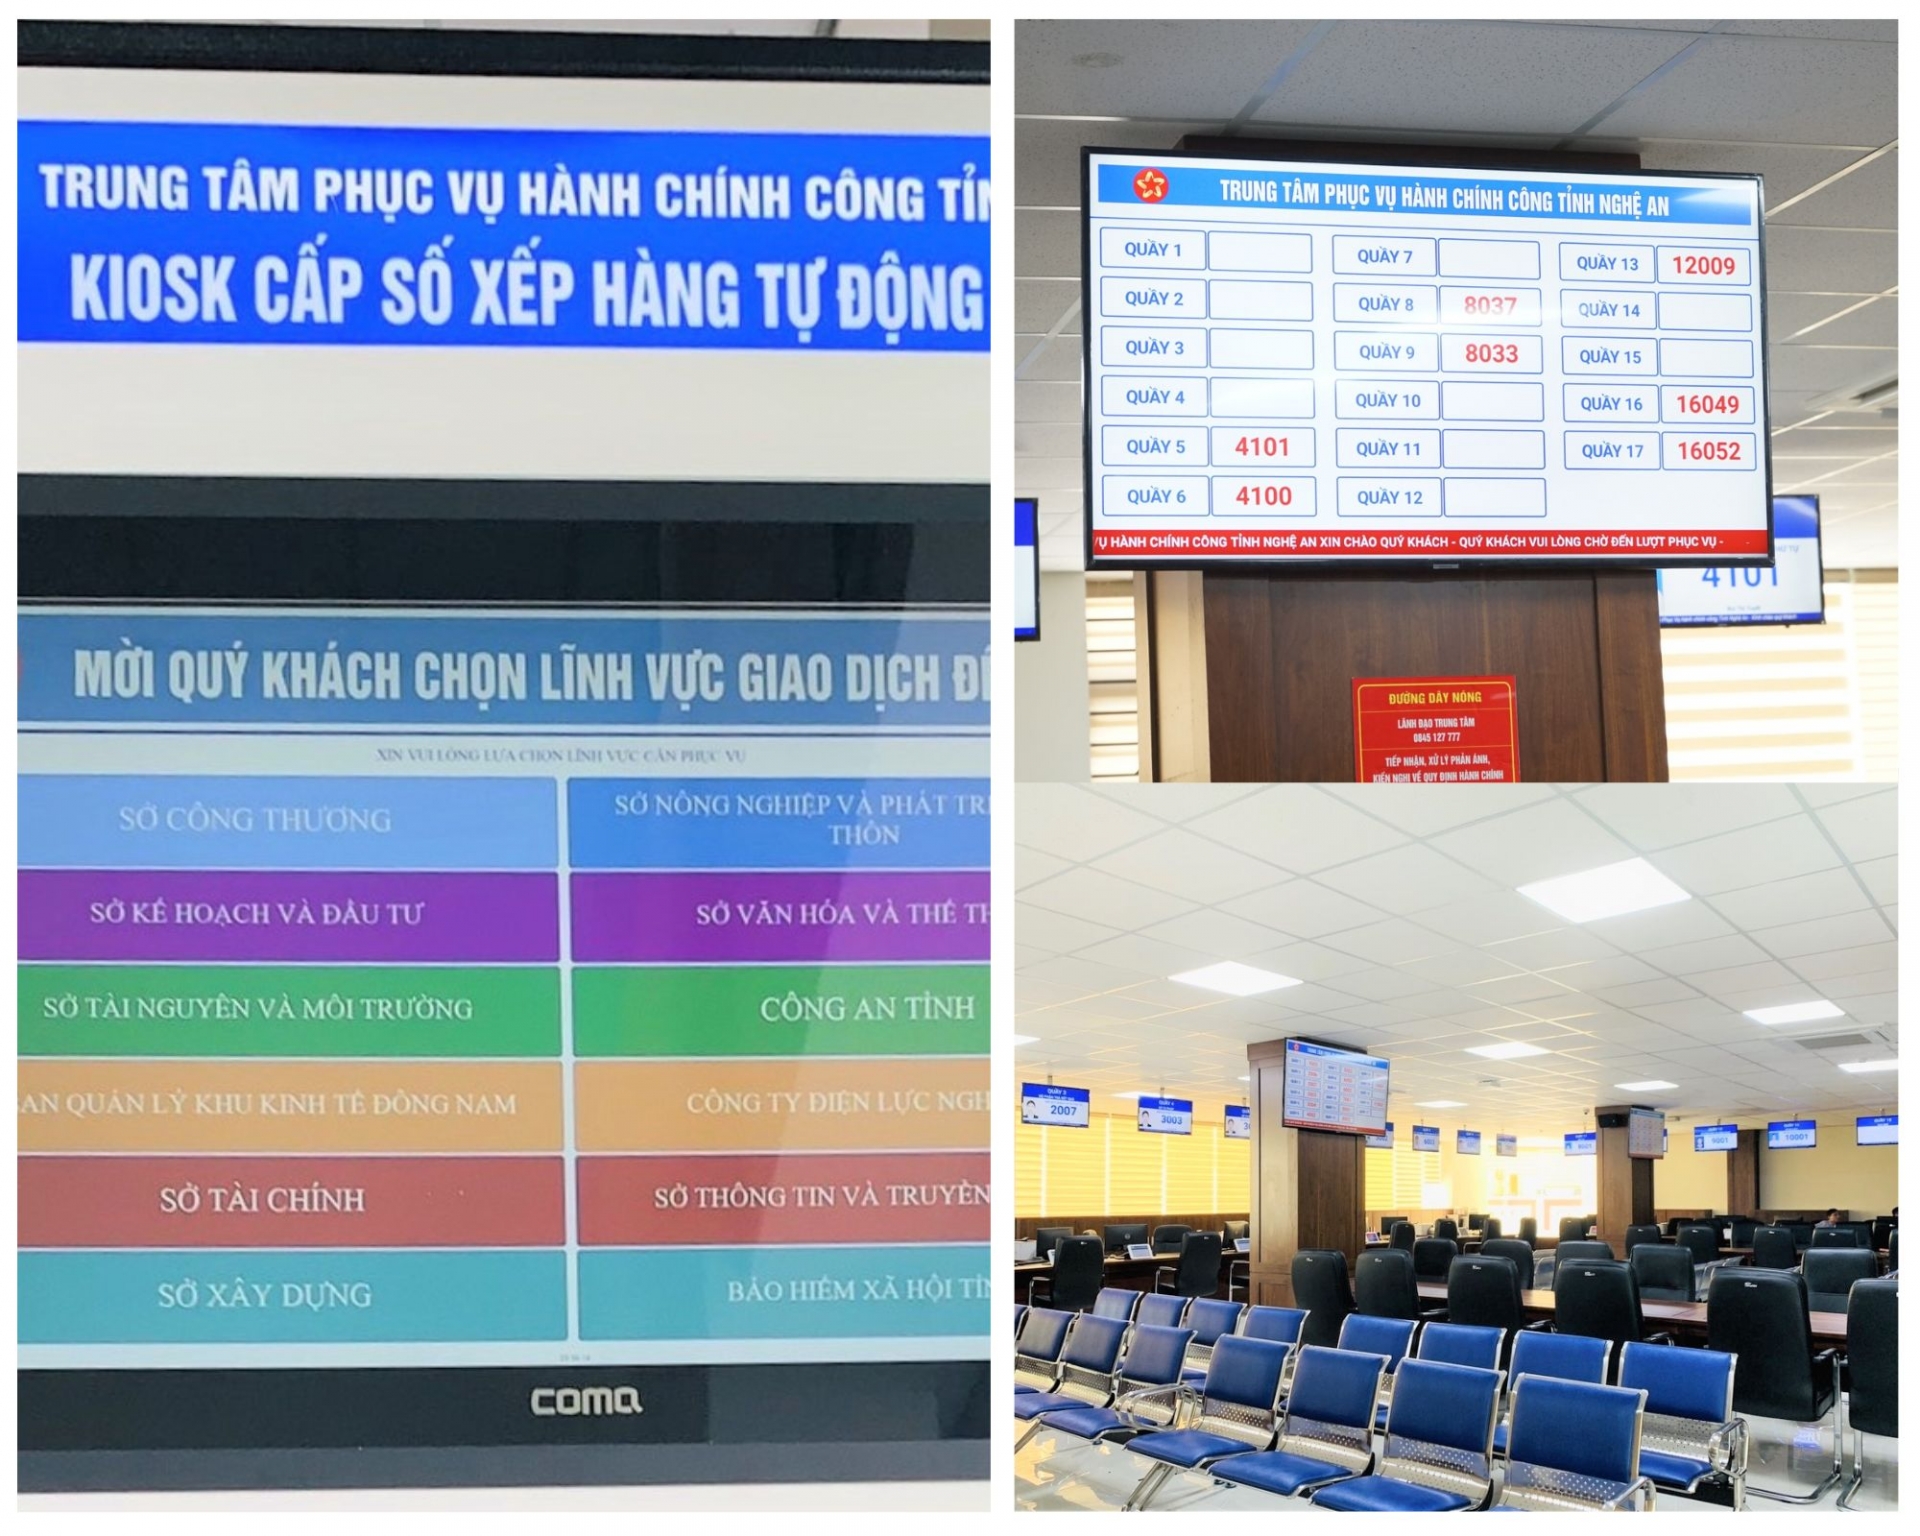 Nghệ An: Người dân hài lòng khi đến giao dịch tại Trung tâm phục vụ hành chính công